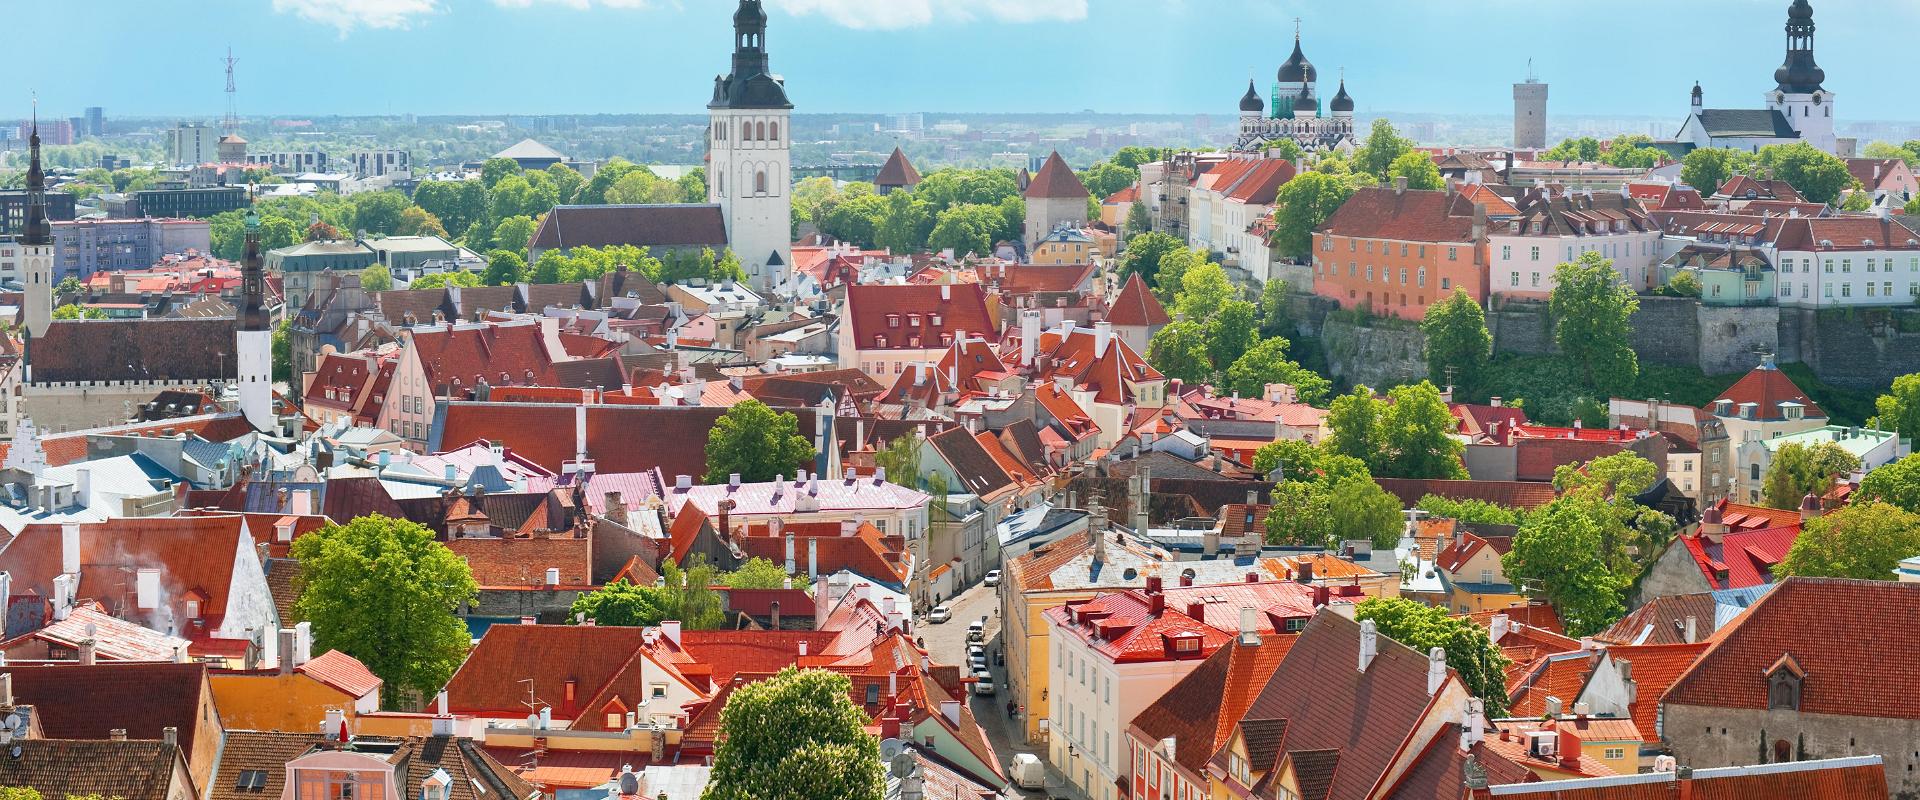 Tallinna vanalinna jalgsiekskursioon edasi-tagasi transfeeri